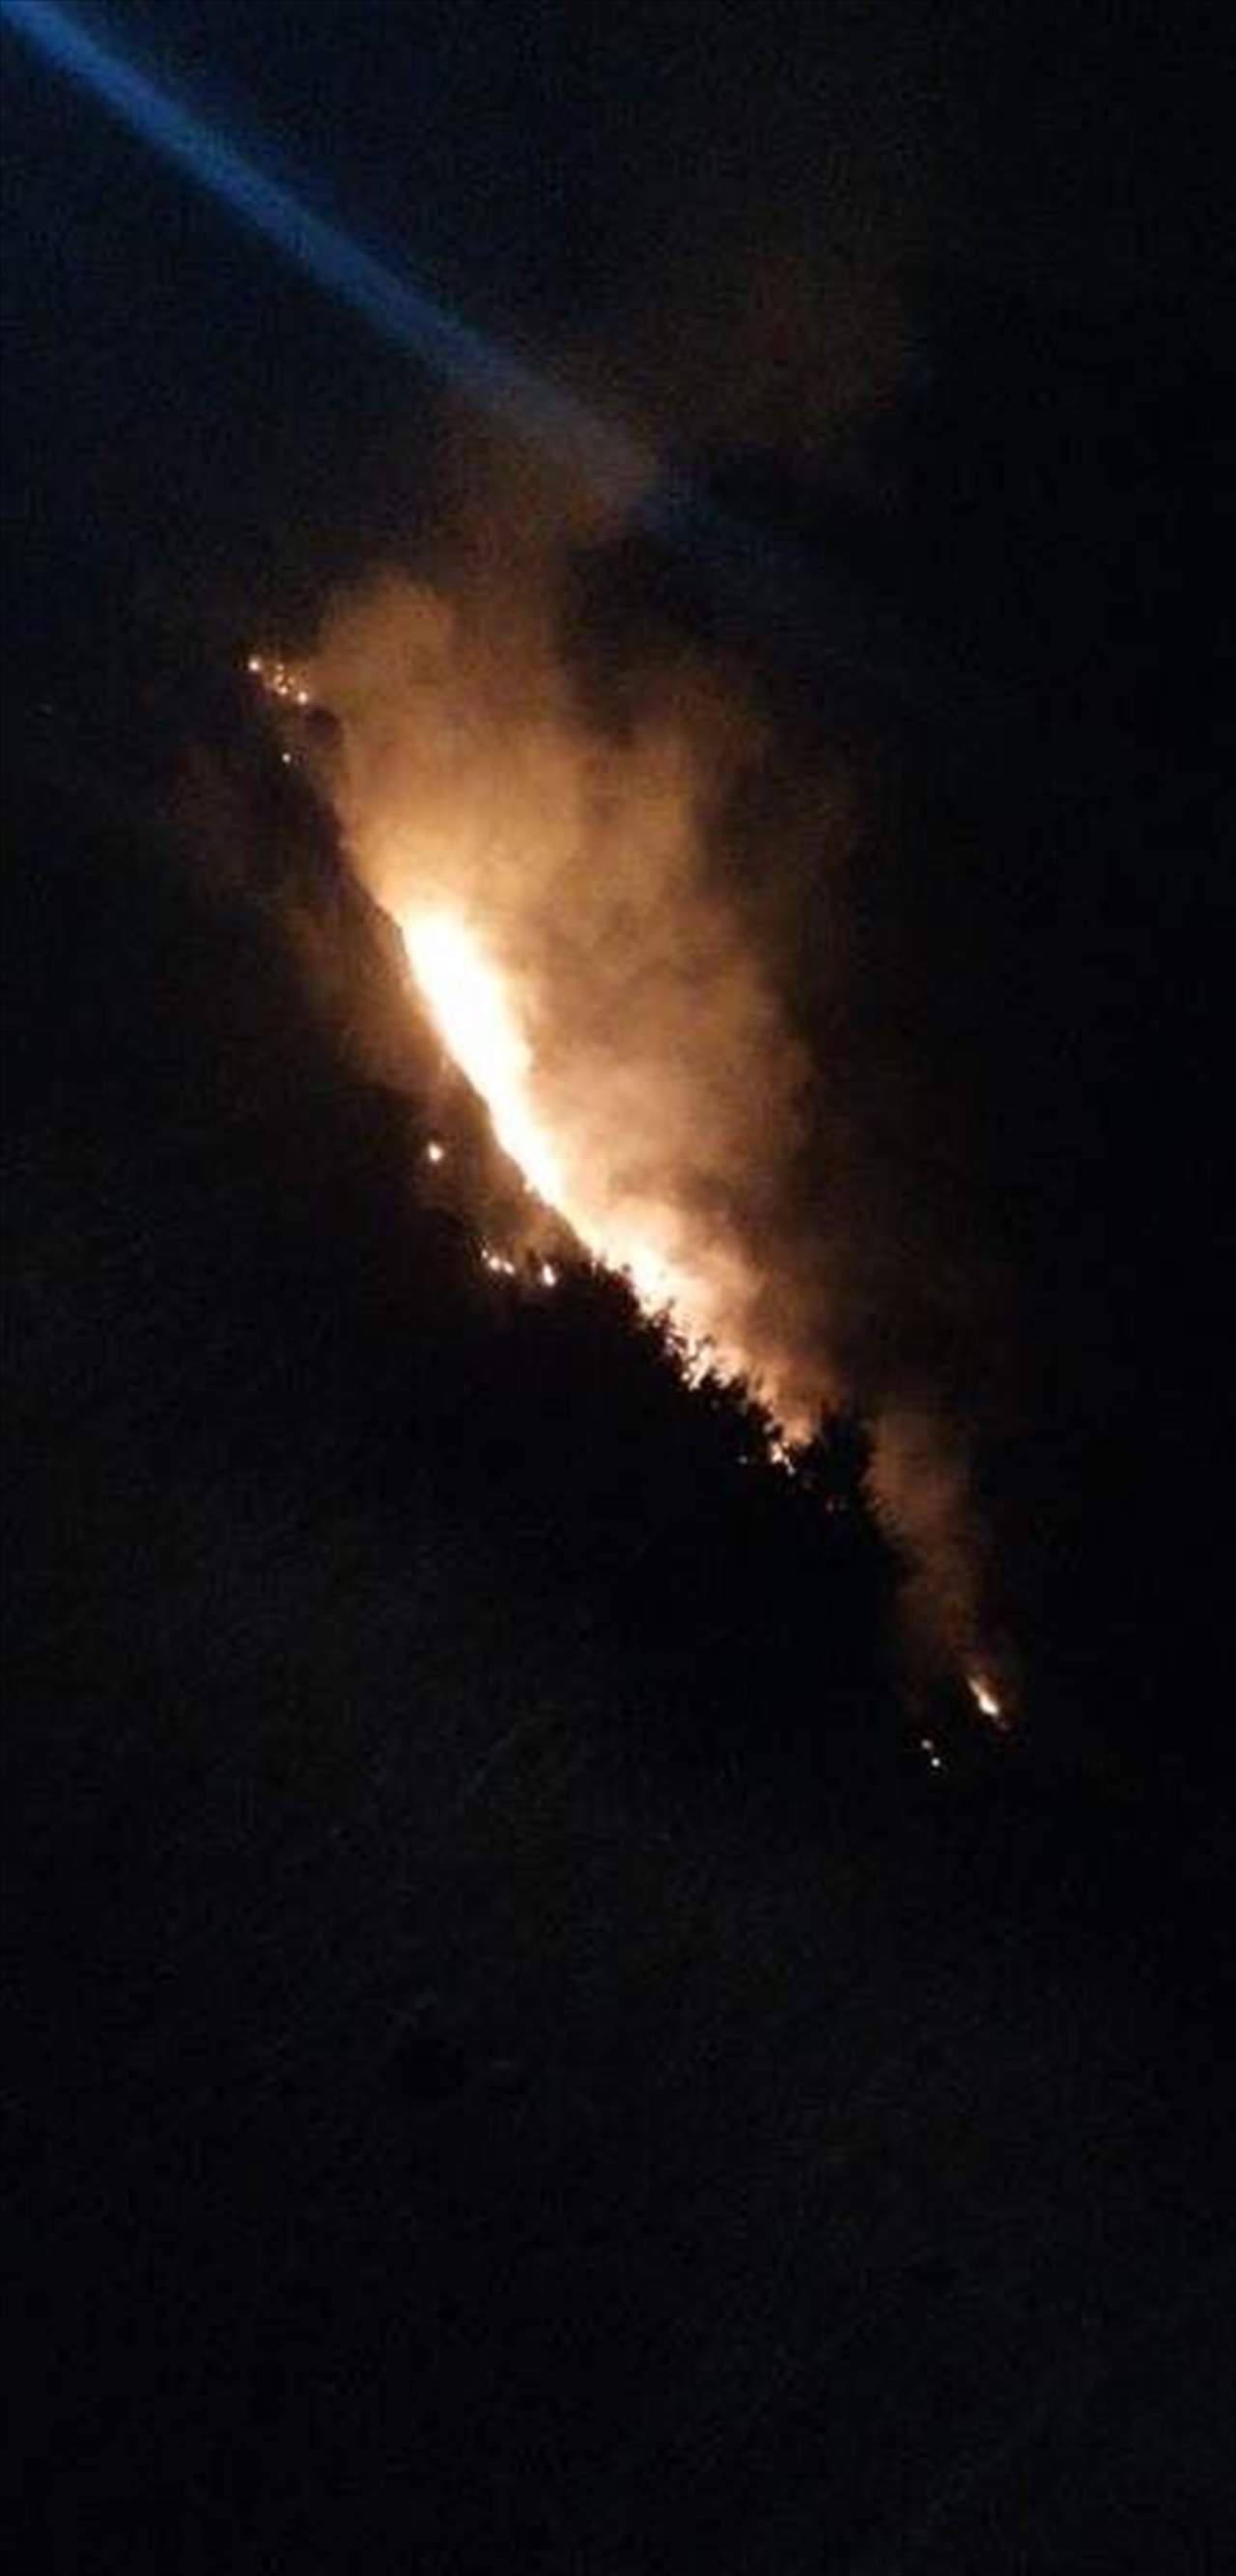  حريق كبير في بلدة كوسبا